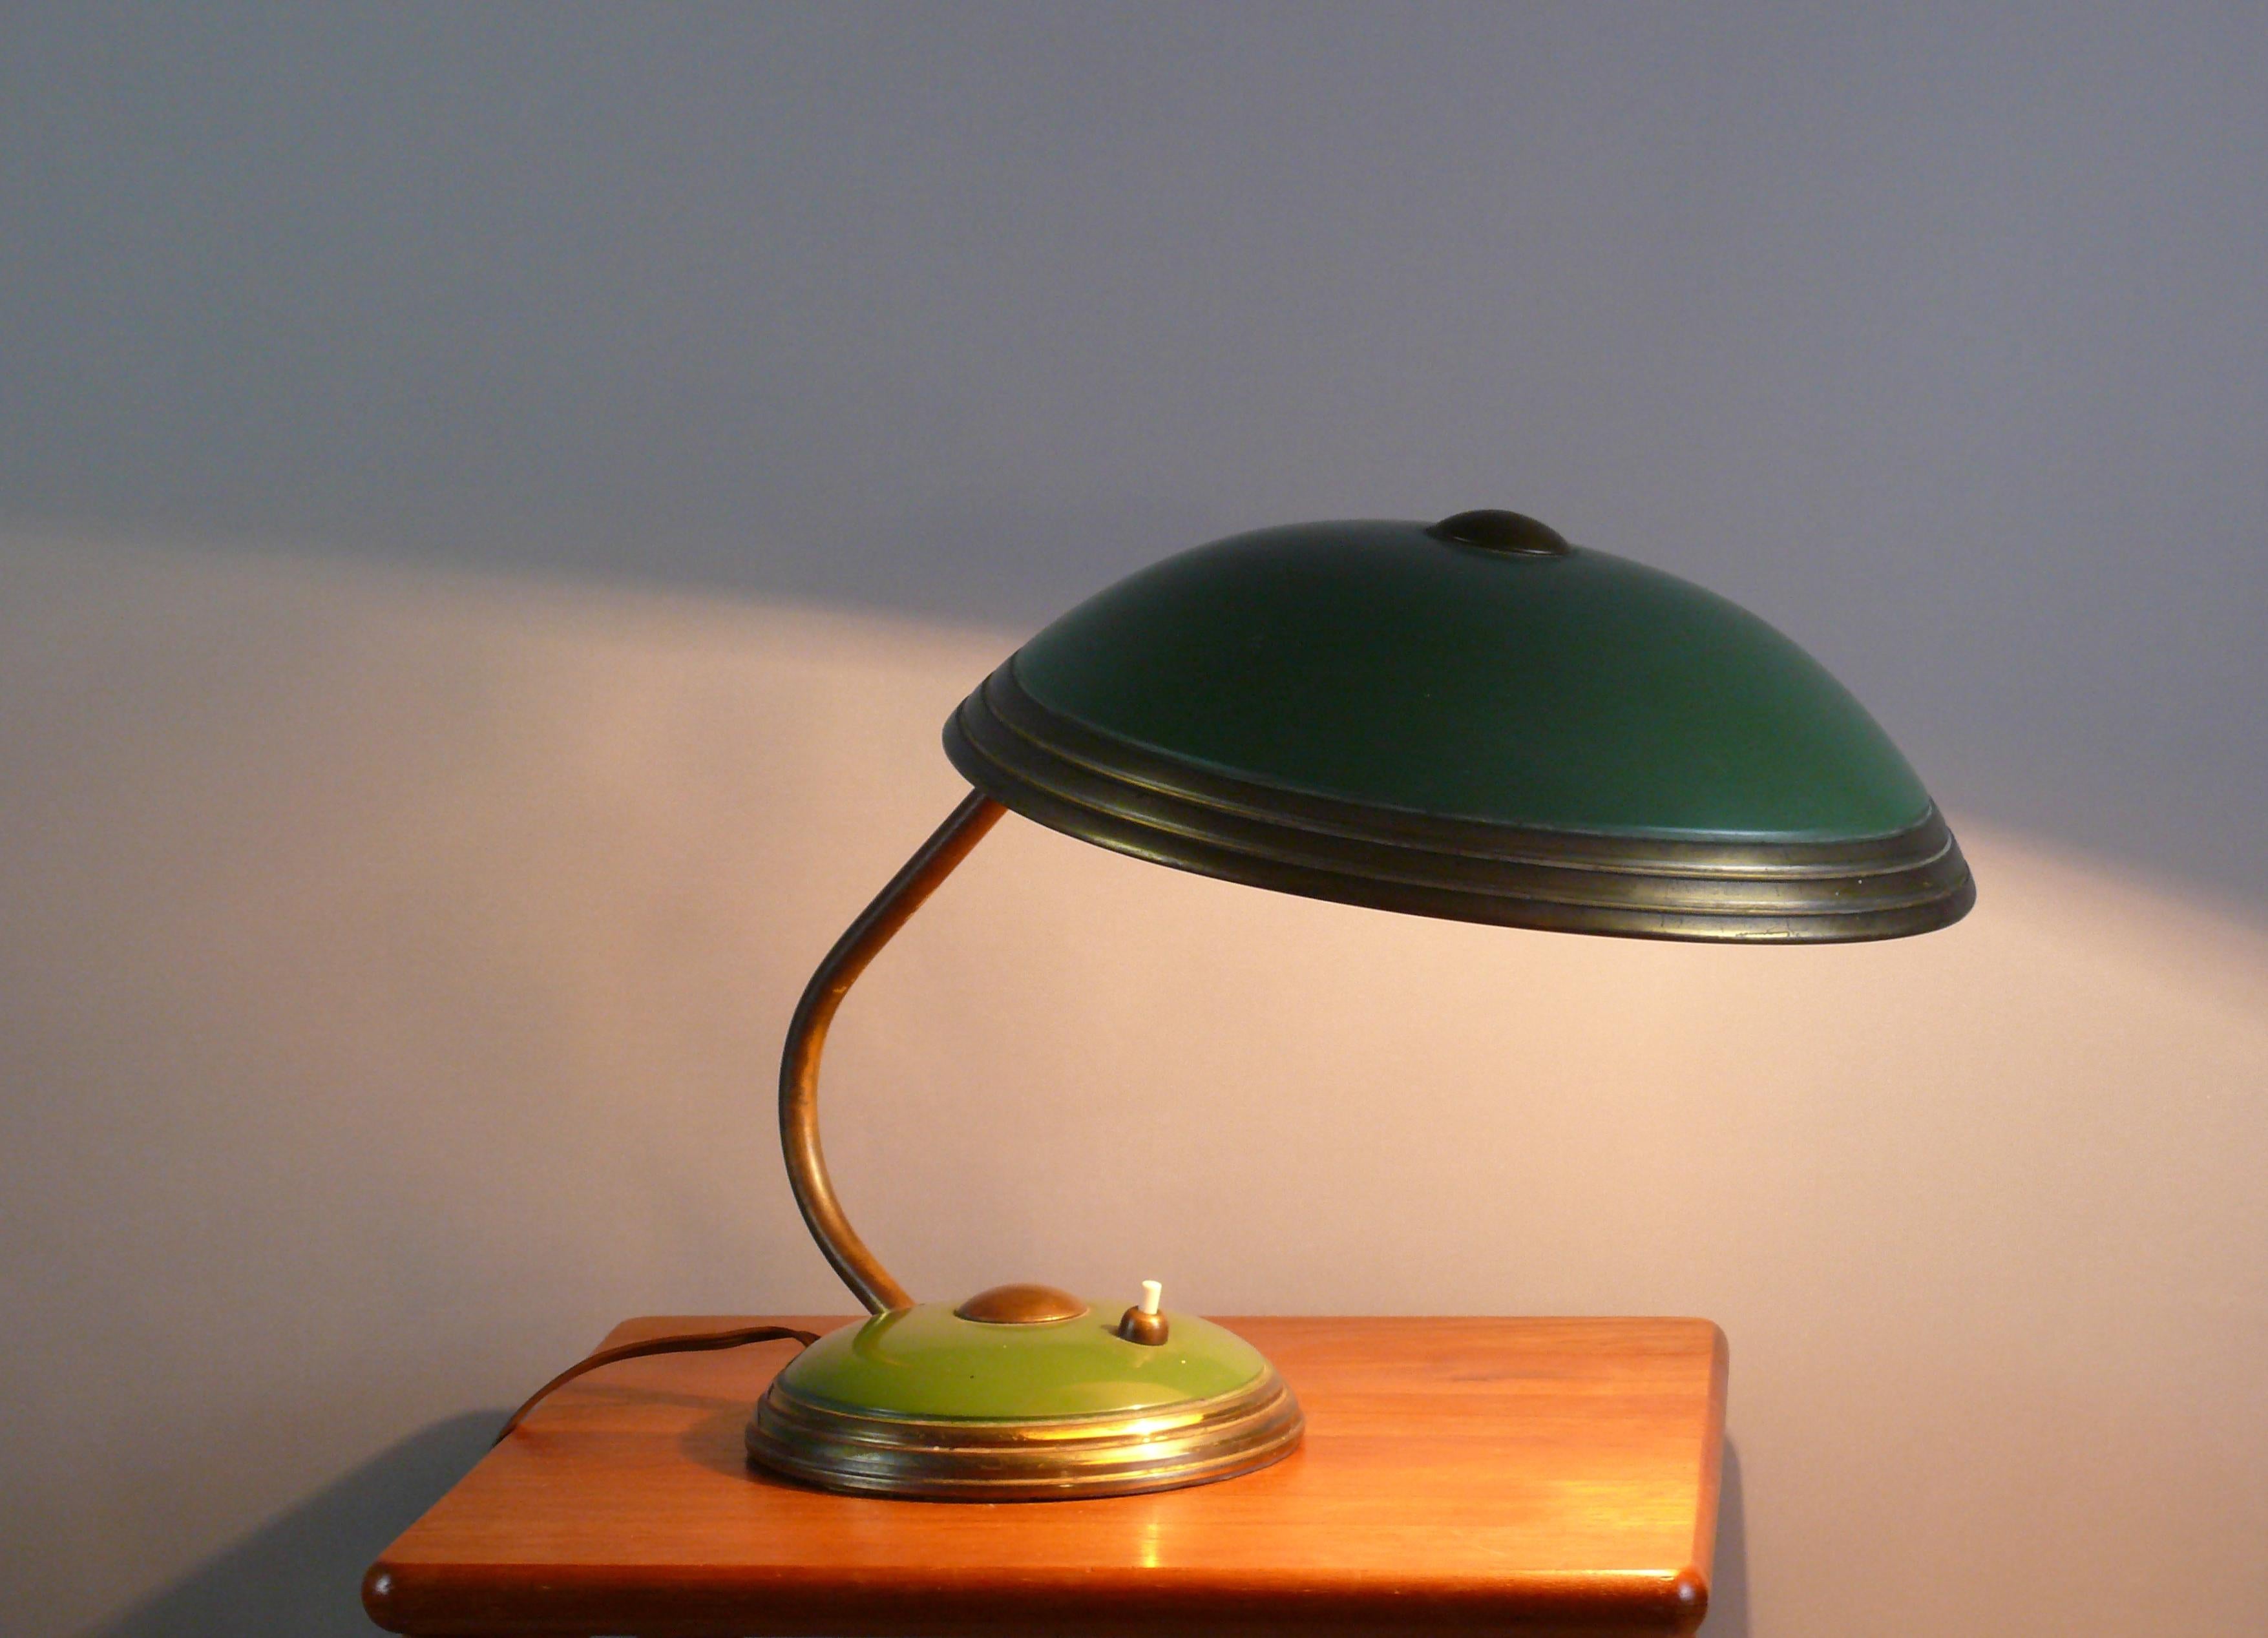 Lampe de table Helo dans son état d'origine, non polie, un classique intemporel des années 1950. D'un point de vue stylistique, le design de la lampe s'inspire de la période du Bauhaus. L'abat-jour peut être réglé de plusieurs façons grâce à une